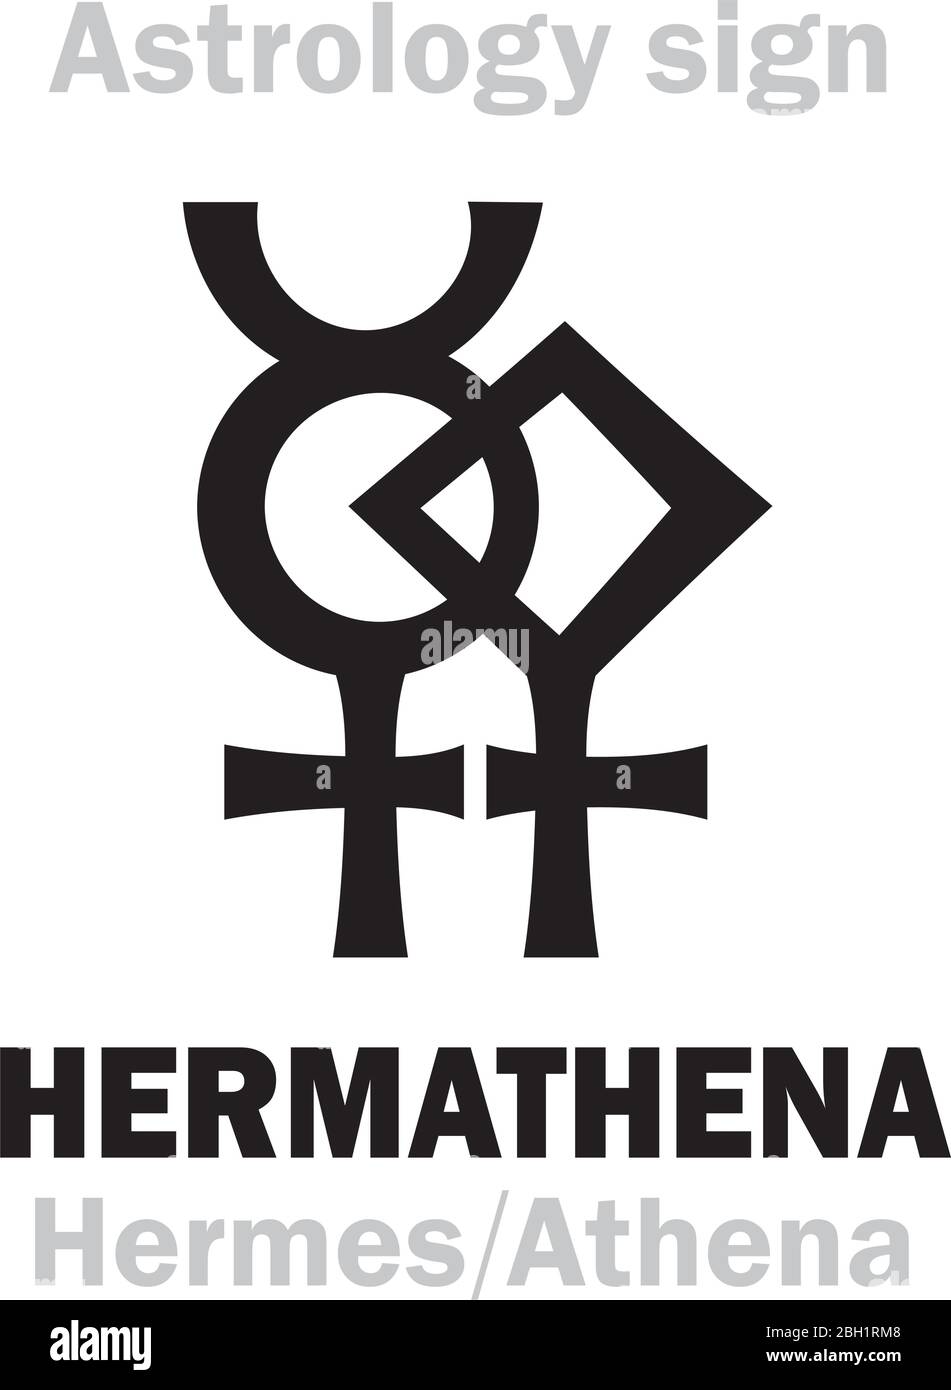 Astrologie Alphabet: HERMATHENA (Hermes+Athena), local ancienne Grèce double déité de l'éloquence, de l'artisanat et des sciences. Symbole du doublement de la sagesse. Illustration de Vecteur